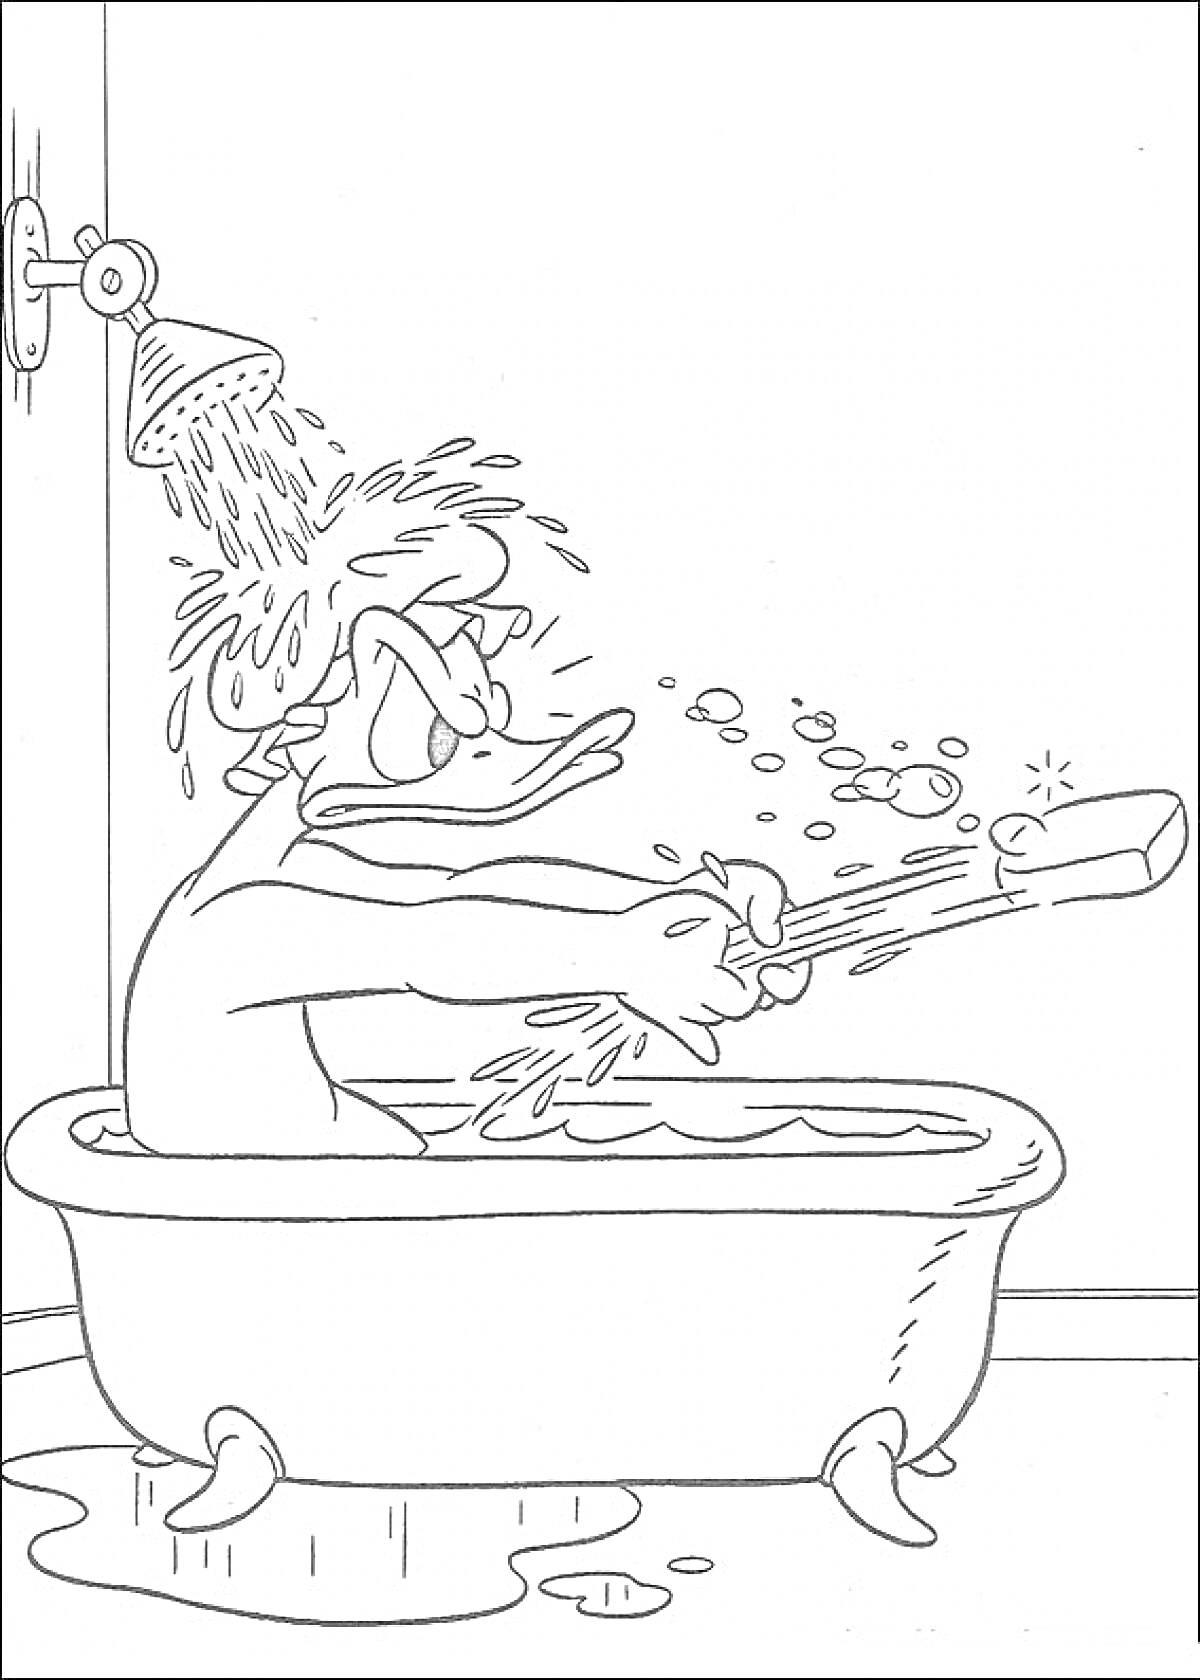 Раскраска Дональд Дак принимает ванну, сидя в ванне и держит в руках щетку, из душа льется вода, на полу лужа